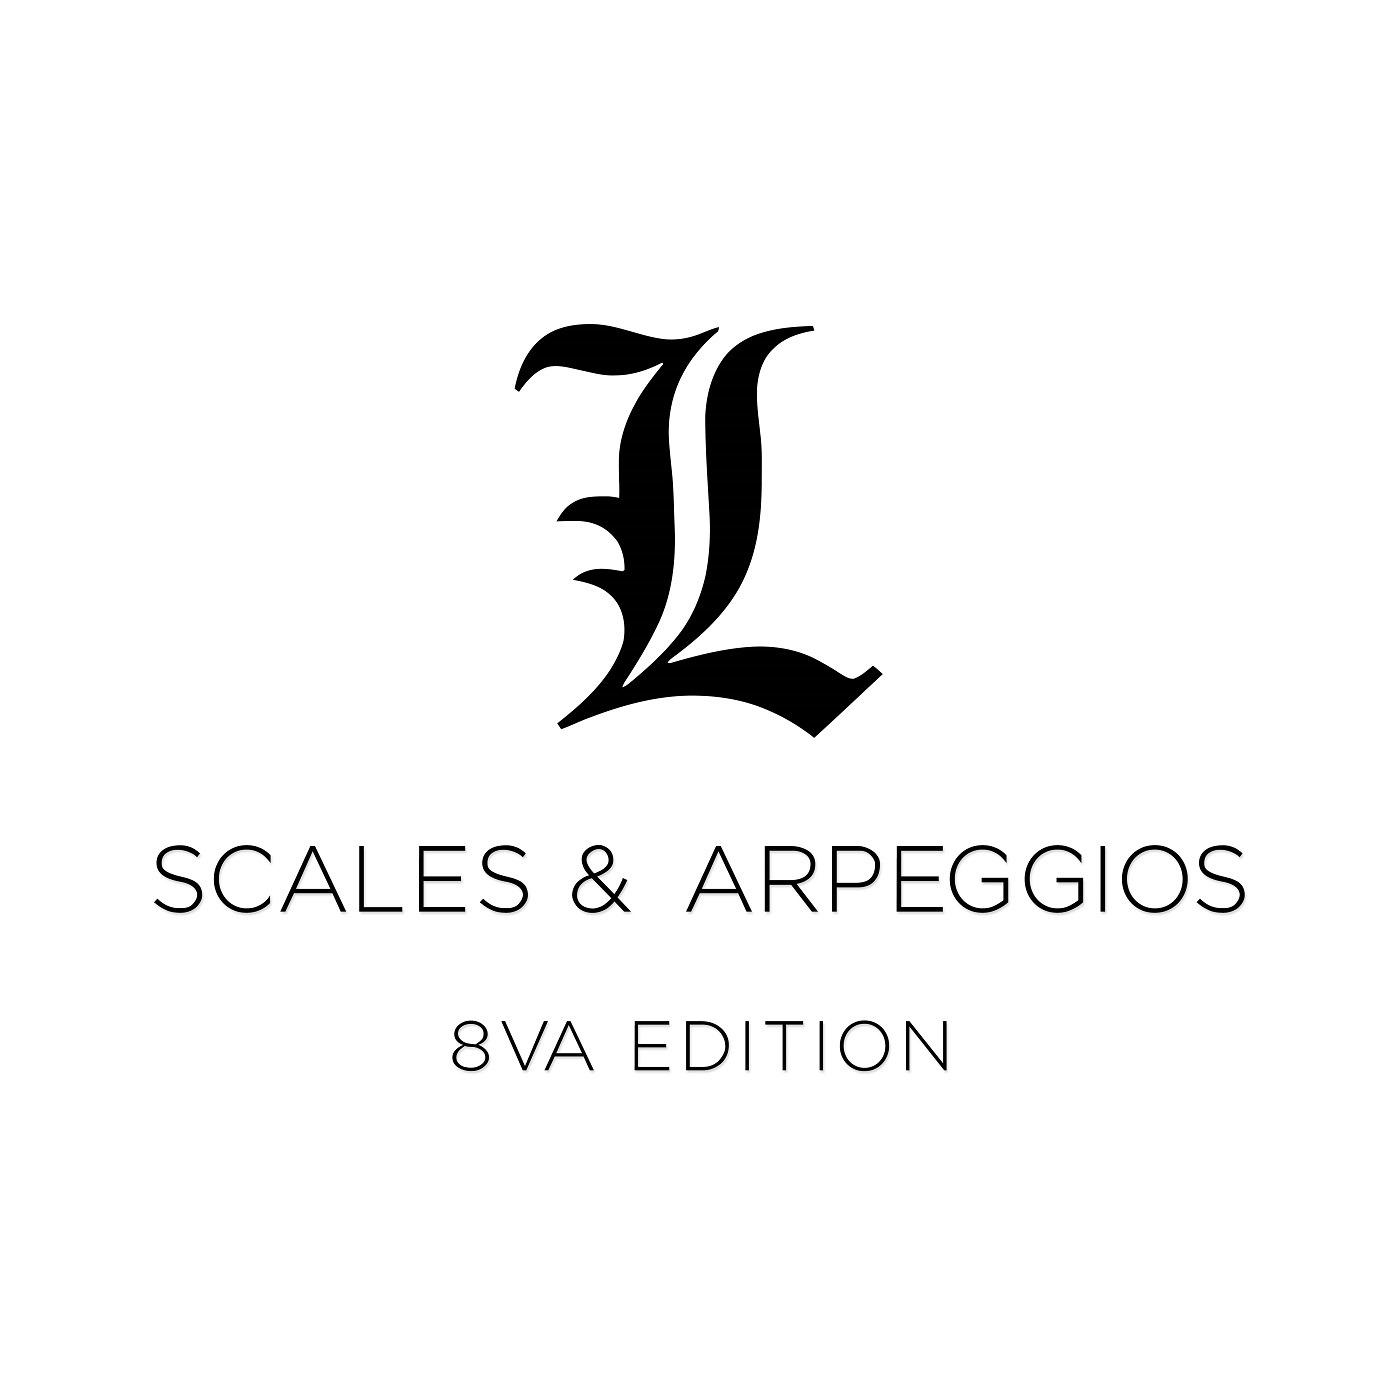 Scales & Arpeggios - 8va Edition - Mixolydian Scales